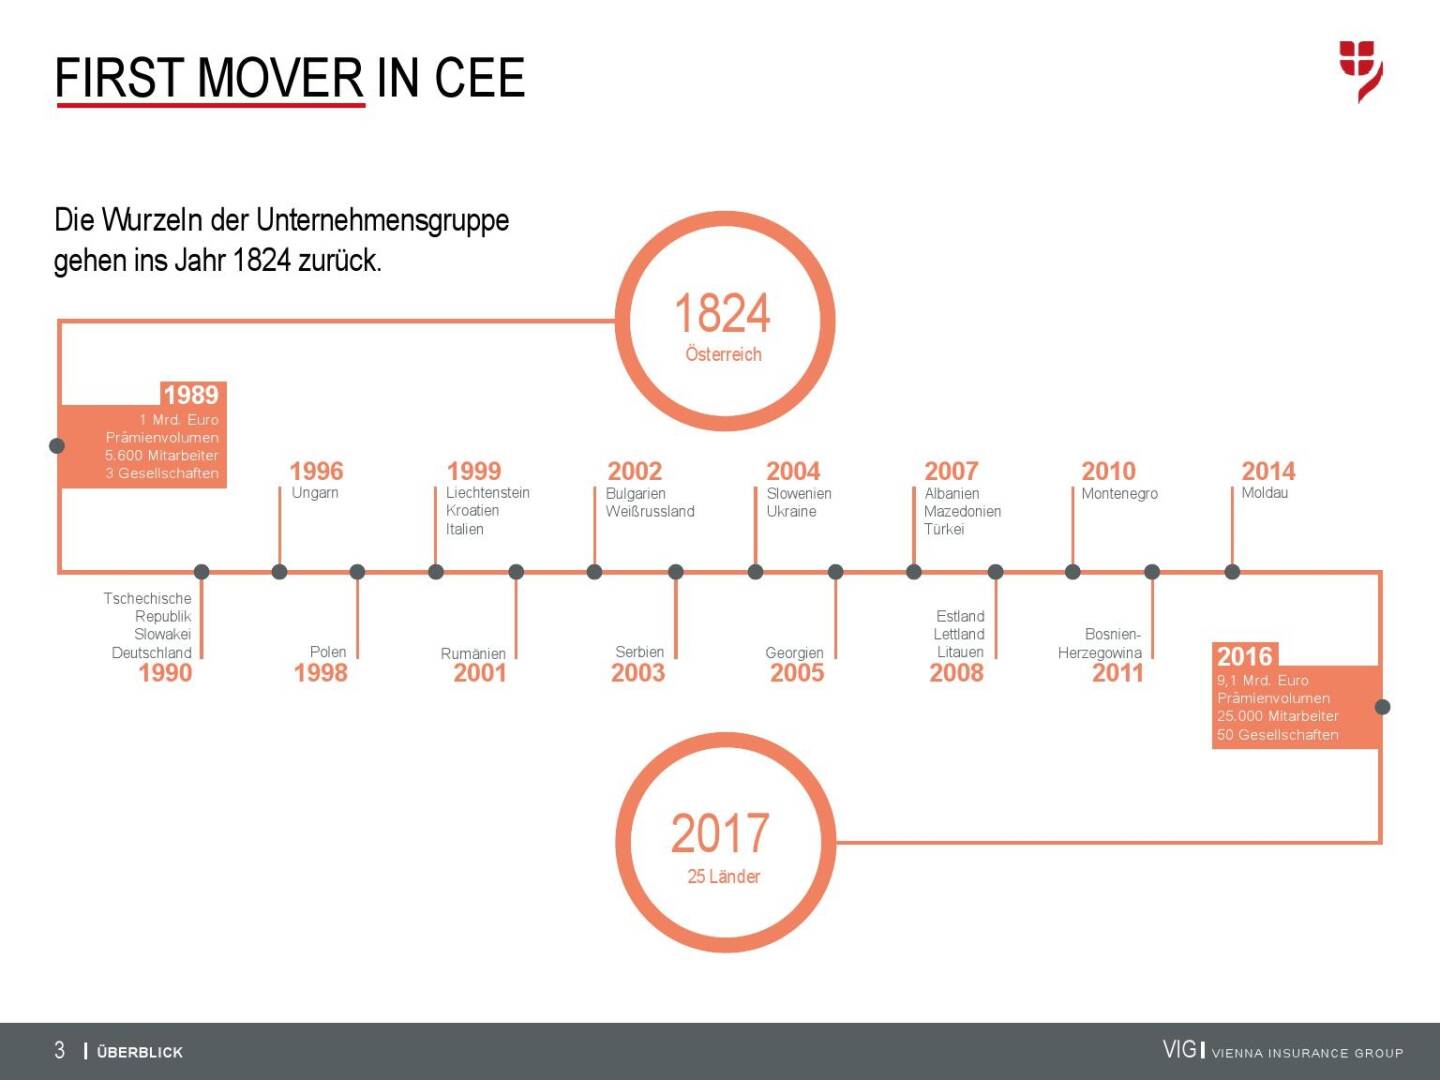 VIG Unternehmenspräsentation - First Mover in CEE